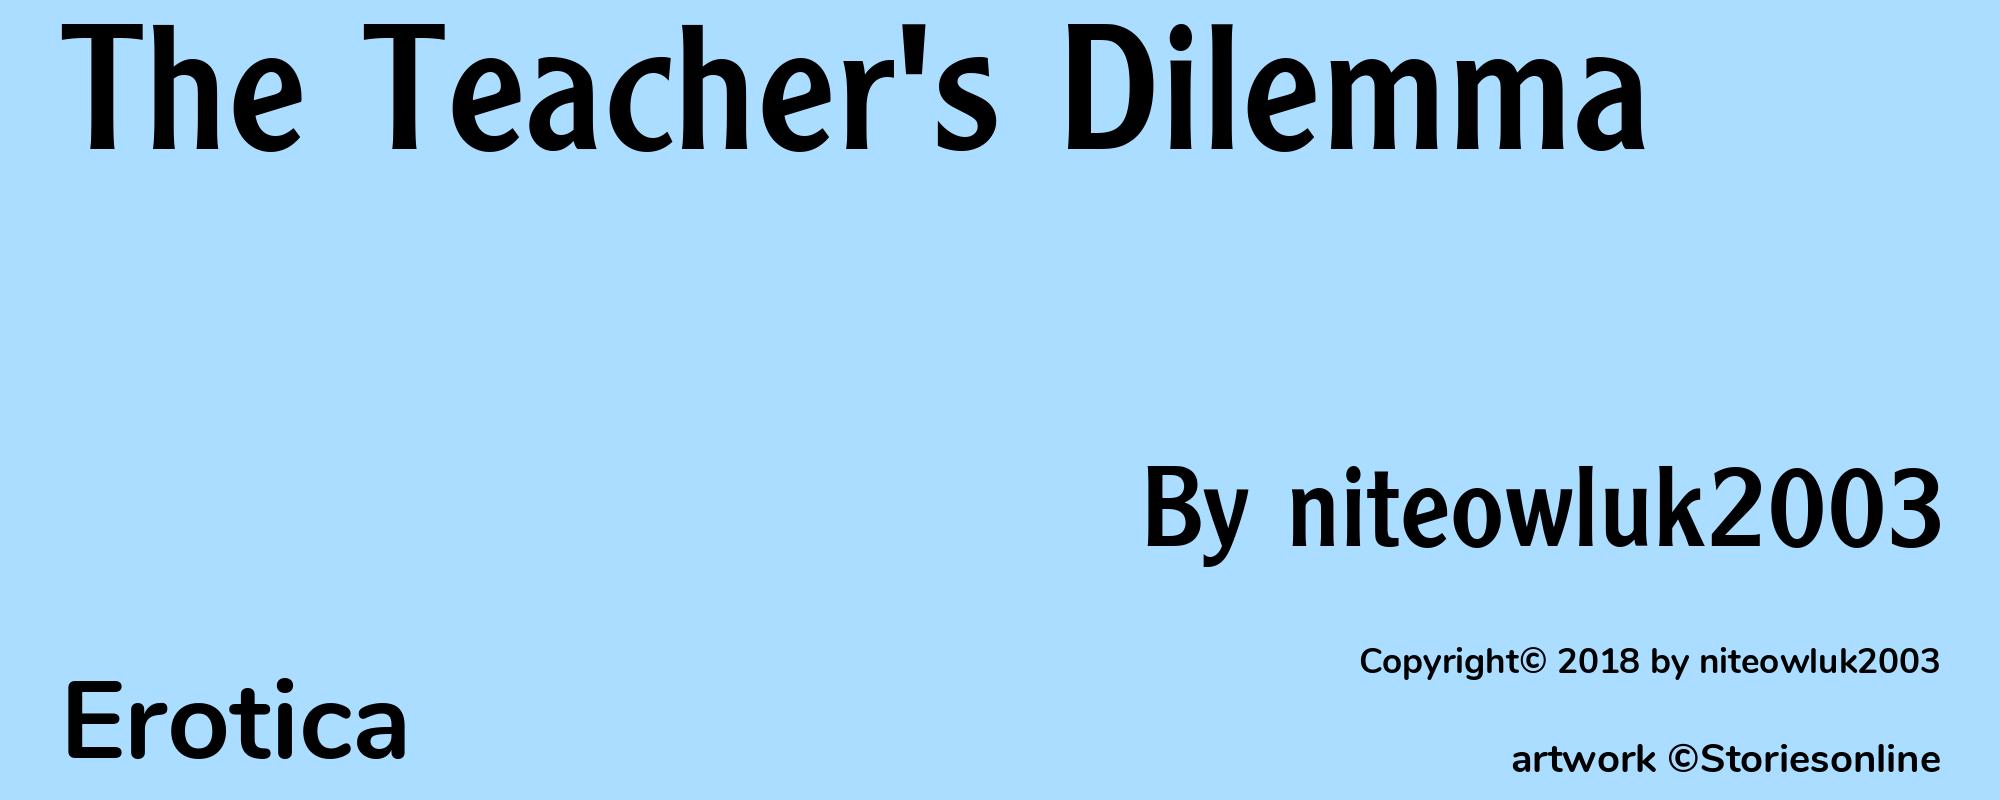 The Teacher's Dilemma - Cover